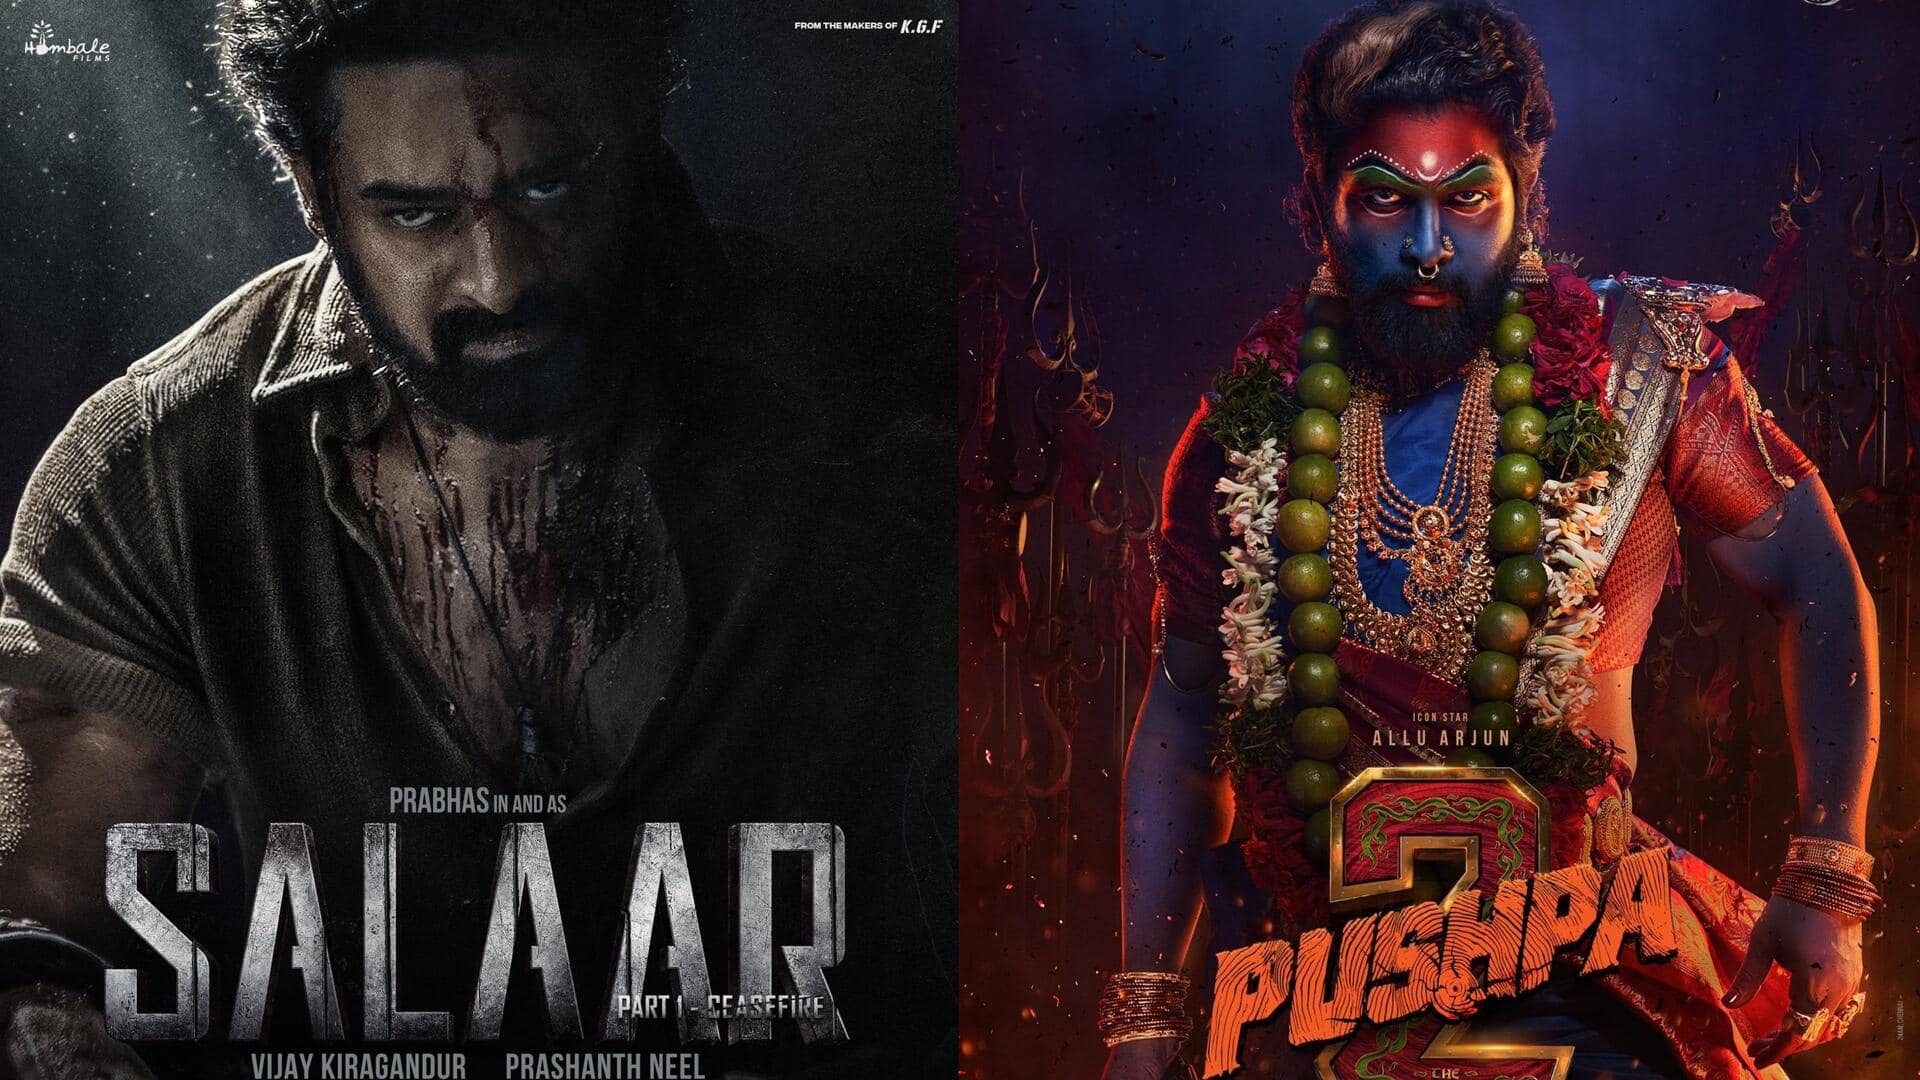 'पुष्पा 2' से 'सालार' तक, 24 घंटे में सबसे ज्यादा देखे गए इन फिल्मों के टीजर